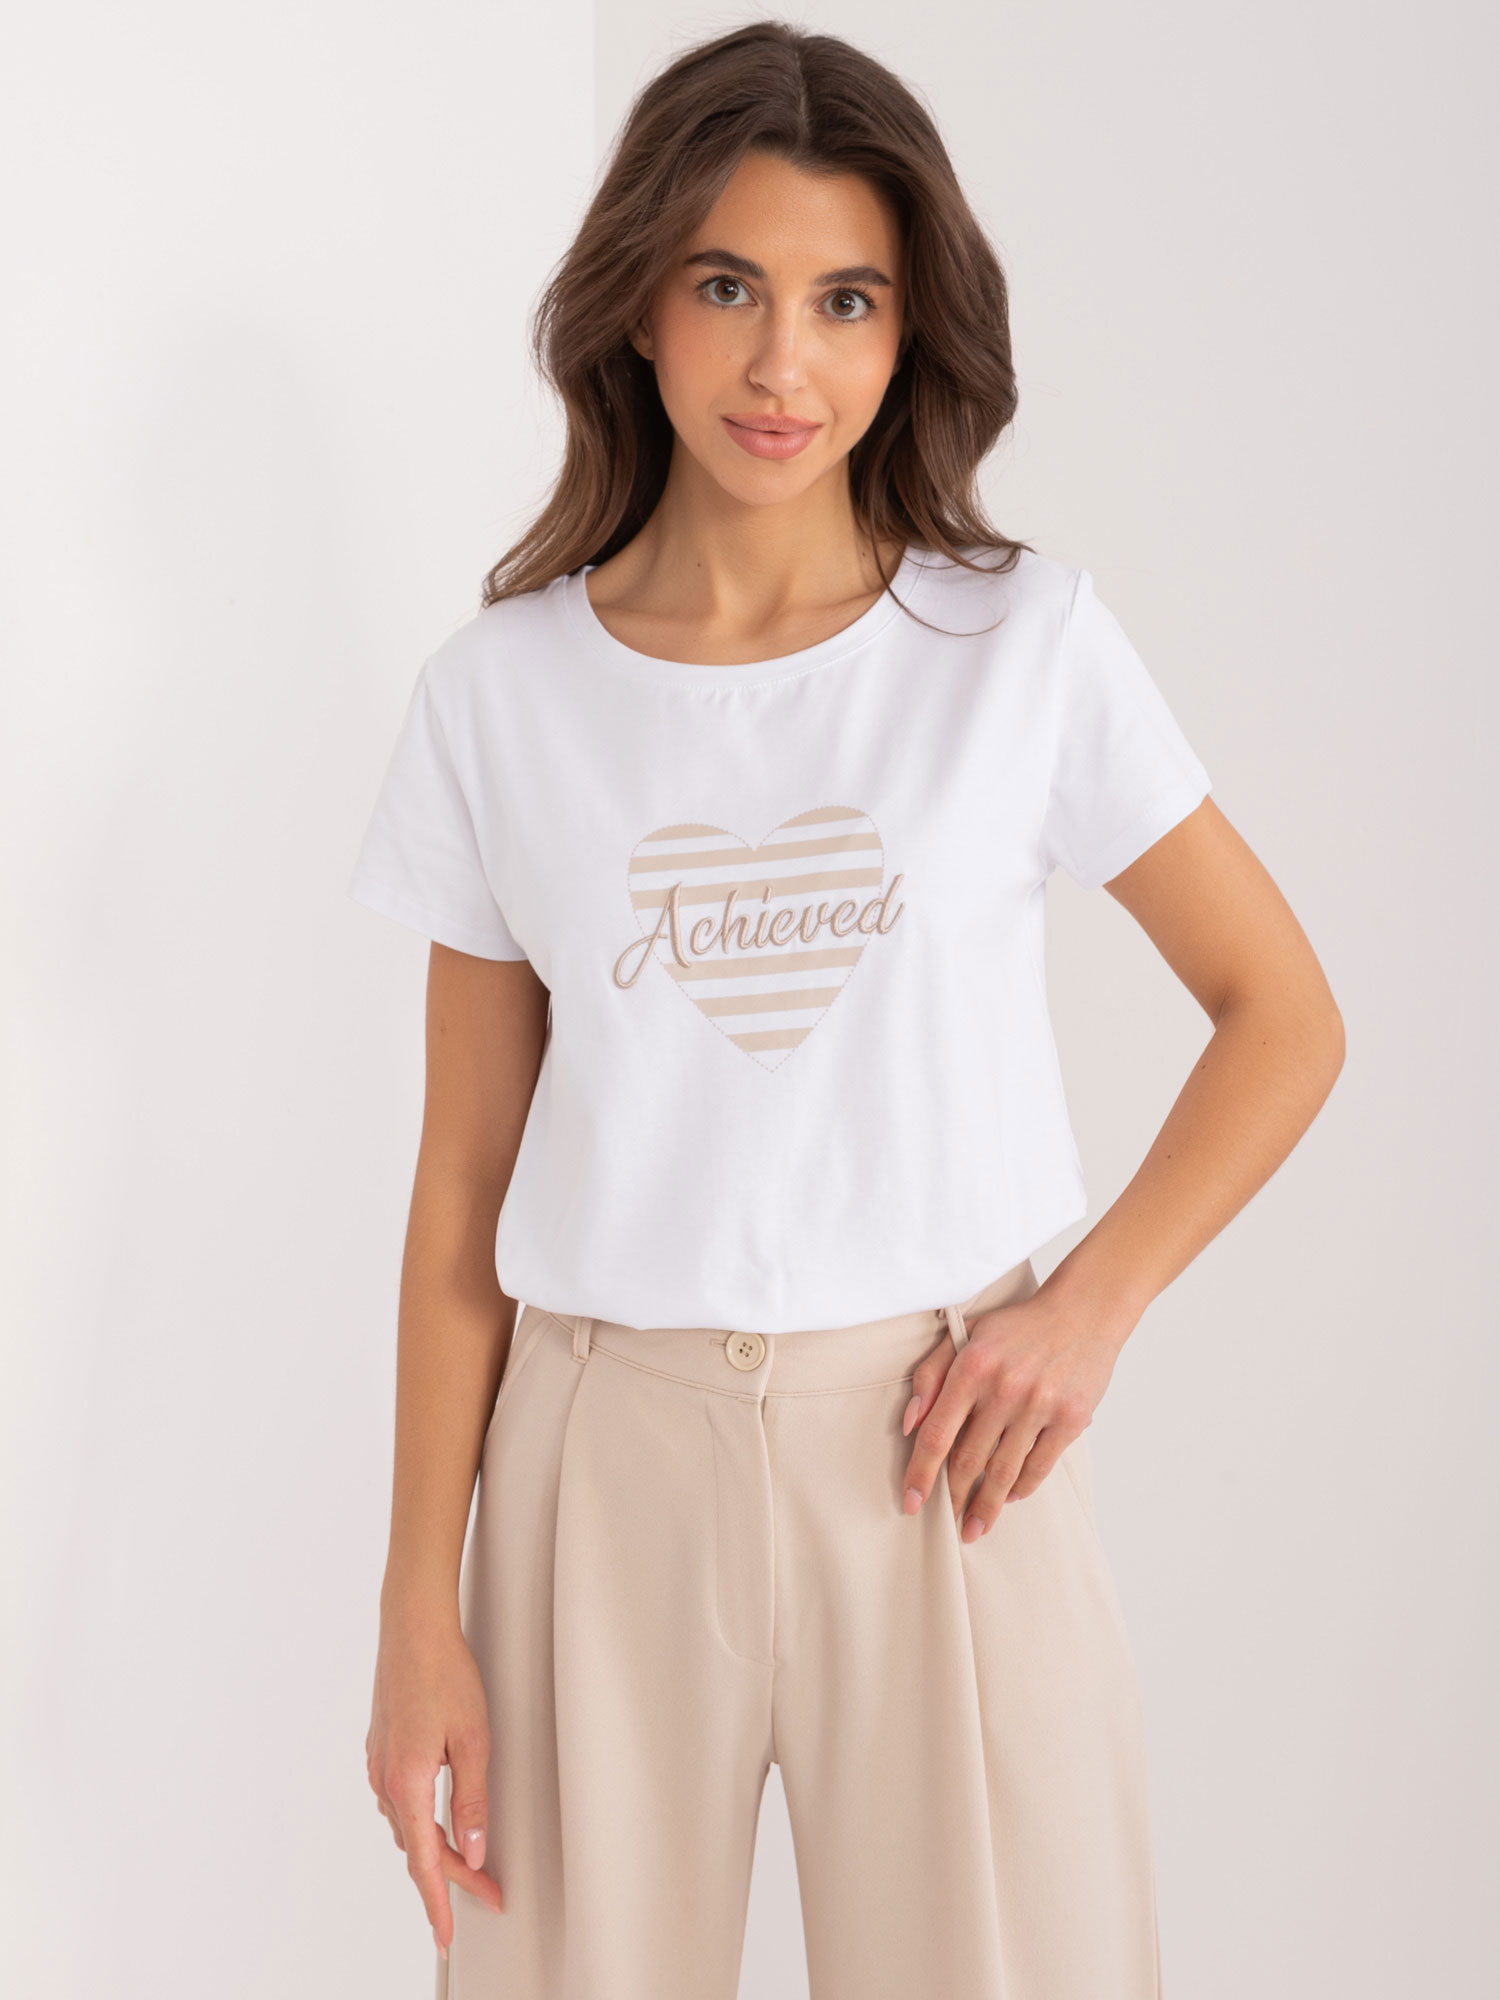 Bílo-béžové tričko s potiskem srdíčka RV-TS-9667.19-white-beige Velikost: L/XL